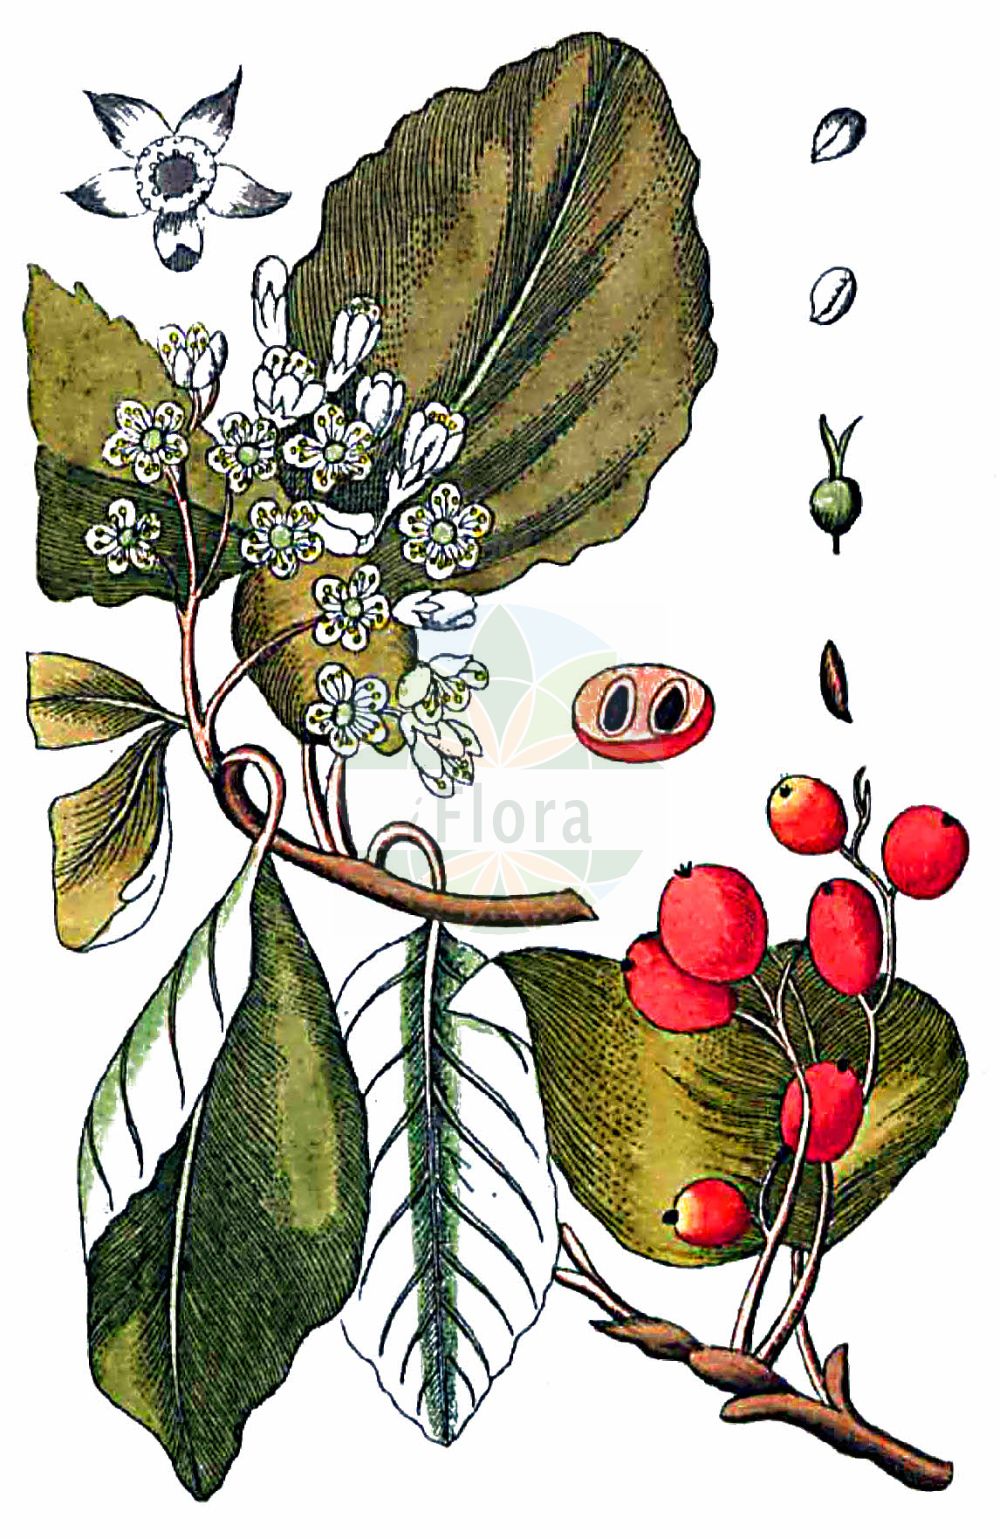 Historische Abbildung von Sorbus aria (Gewöhnliche Mehlbeere - Common Whitebeam). Das Bild zeigt Blatt, Bluete, Frucht und Same. ---- Historical Drawing of Sorbus aria (Gewöhnliche Mehlbeere - Common Whitebeam). The image is showing leaf, flower, fruit and seed.(Sorbus aria,Gewöhnliche Mehlbeere,Common Whitebeam,Azarolus aria,Crataegus aria,Hahnia aria,Lazarolus aria,Malus aria,Pyrenia aria,Pyrus aria,Sorbus aria,Gewoehnliche Mehlbeere,Echte Mehlbeere,Common Whitebeam,Rowan,Moutain Ash,Sorbus,Vogelbeere,White Beam,Rosaceae,Rosengewächse,Rose family,Blatt,Bluete,Frucht,Same,leaf,flower,fruit,seed,Gesellschaft Kraeuterkenner (1778-1794))